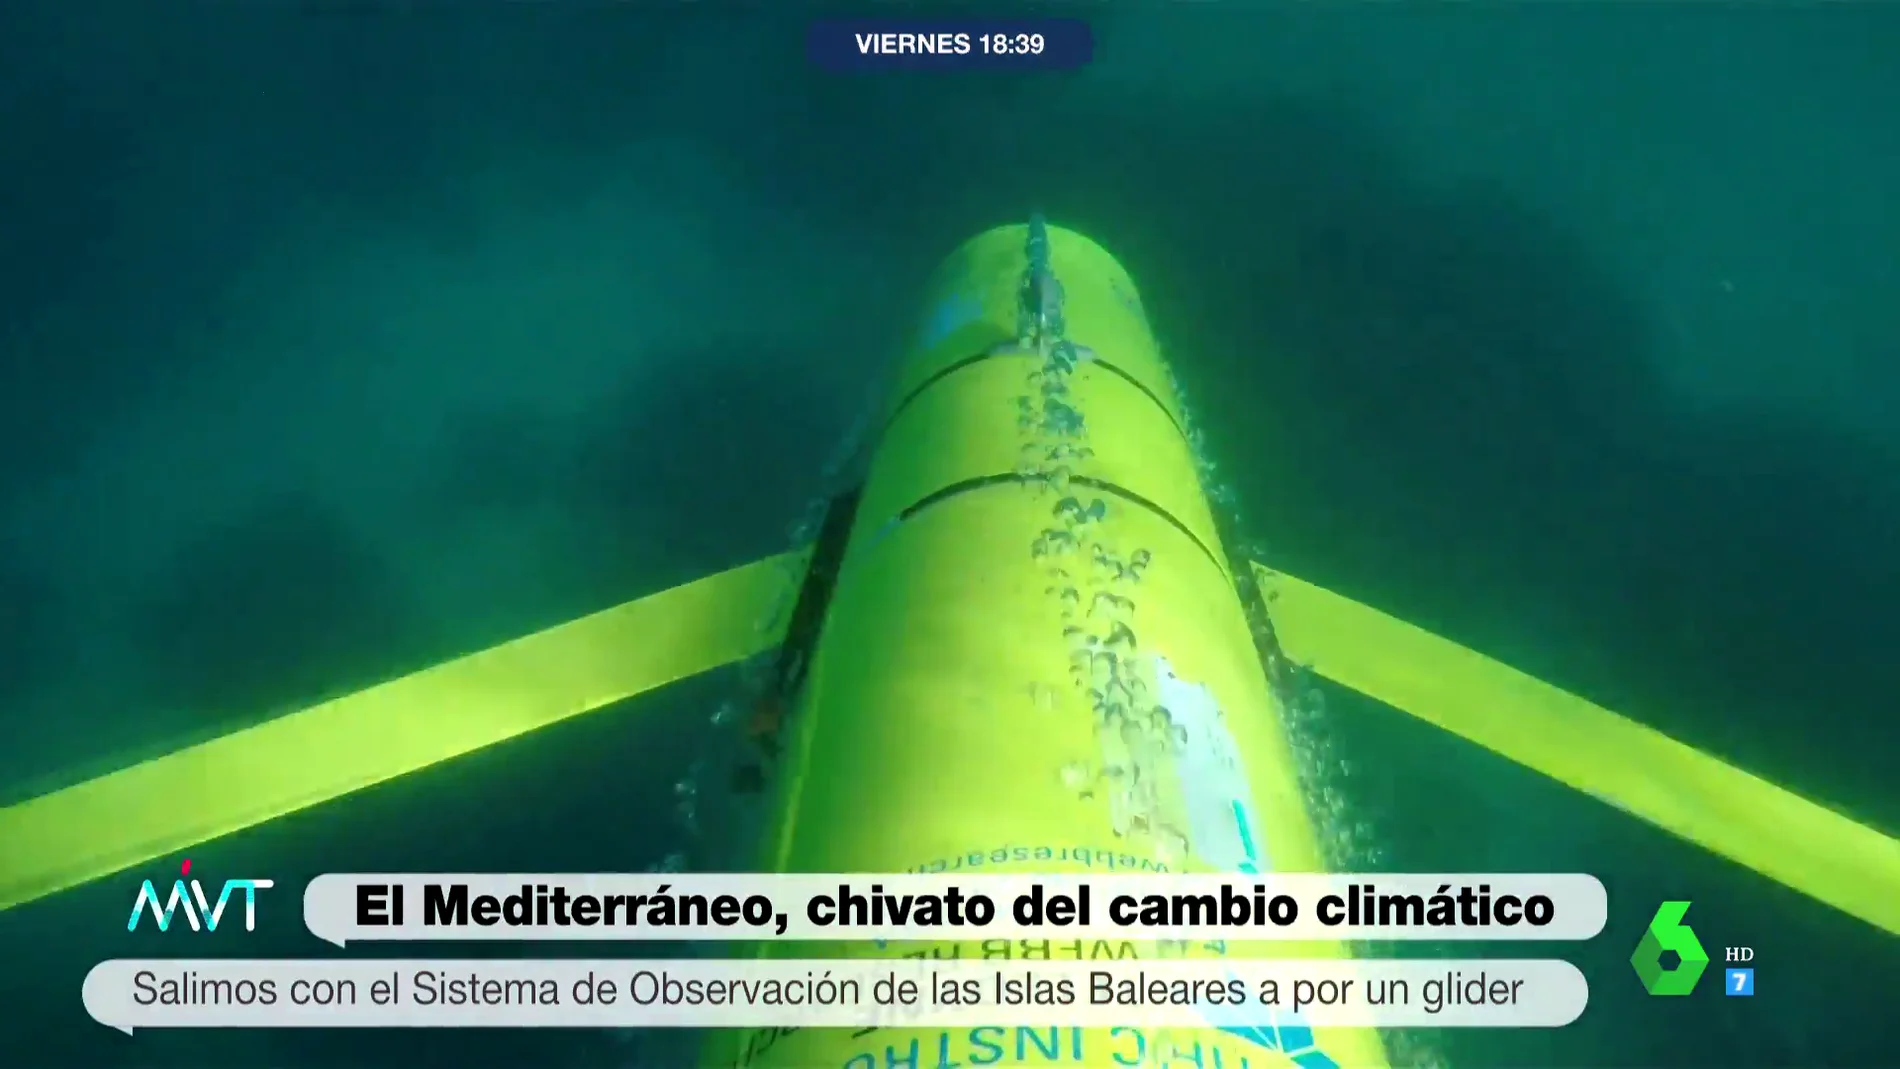 El Mediterráneo, el termómetro del planeta: un dron submarino muestra el impacto del cambio climático en la zona de Mallorca